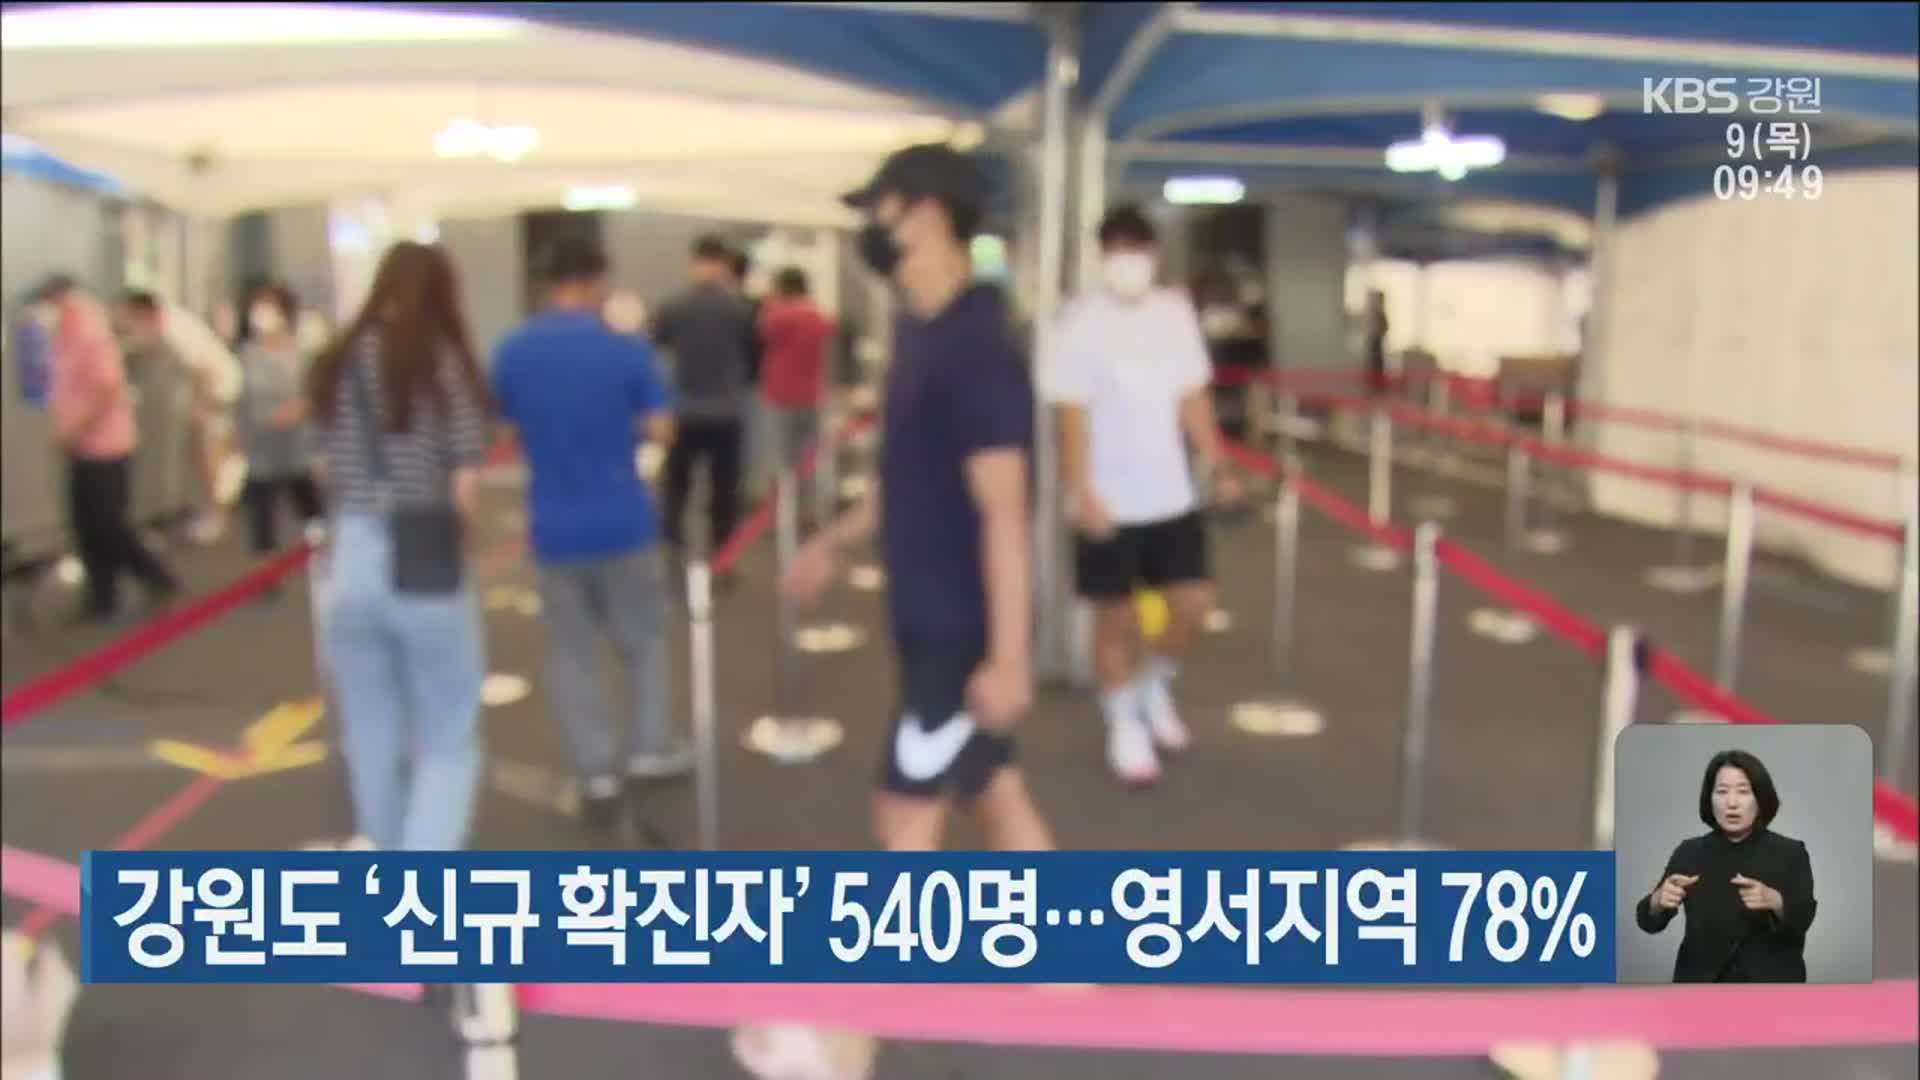 강원도 ‘신규 확진자’ 540명…영서지역 78%